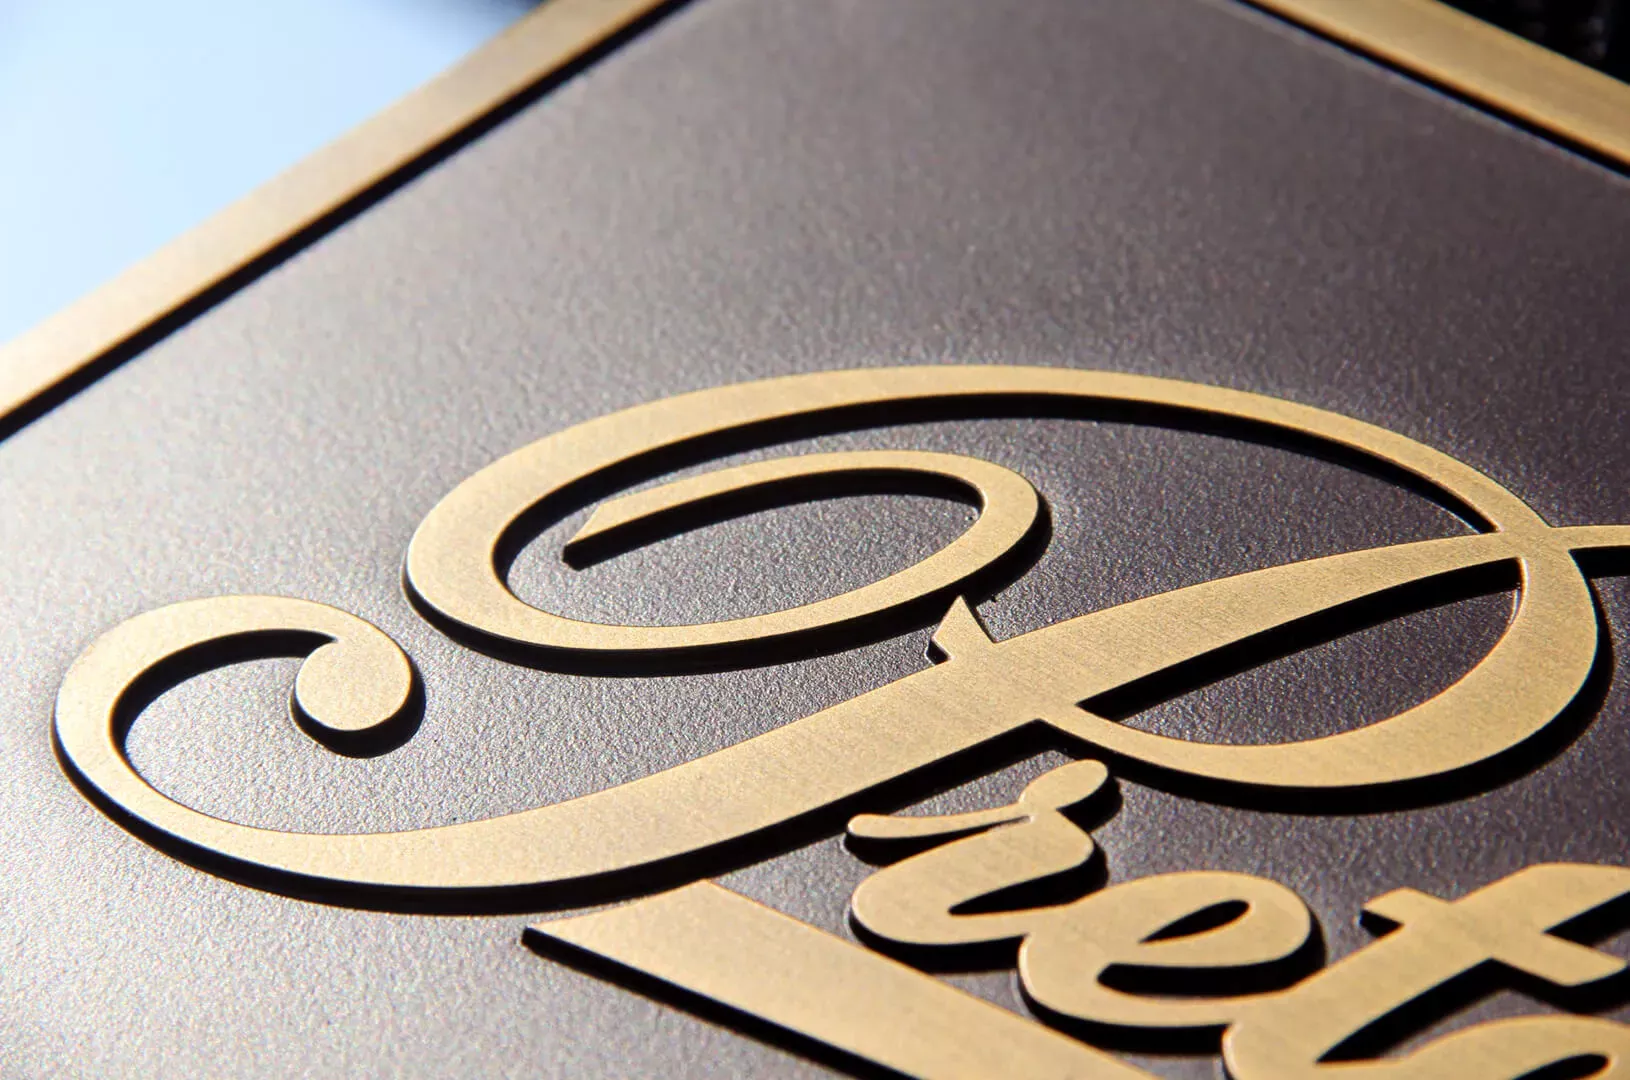 Gussplakette Pretende - Plakette aus Bronzeguss mit dem Pretende-Logo